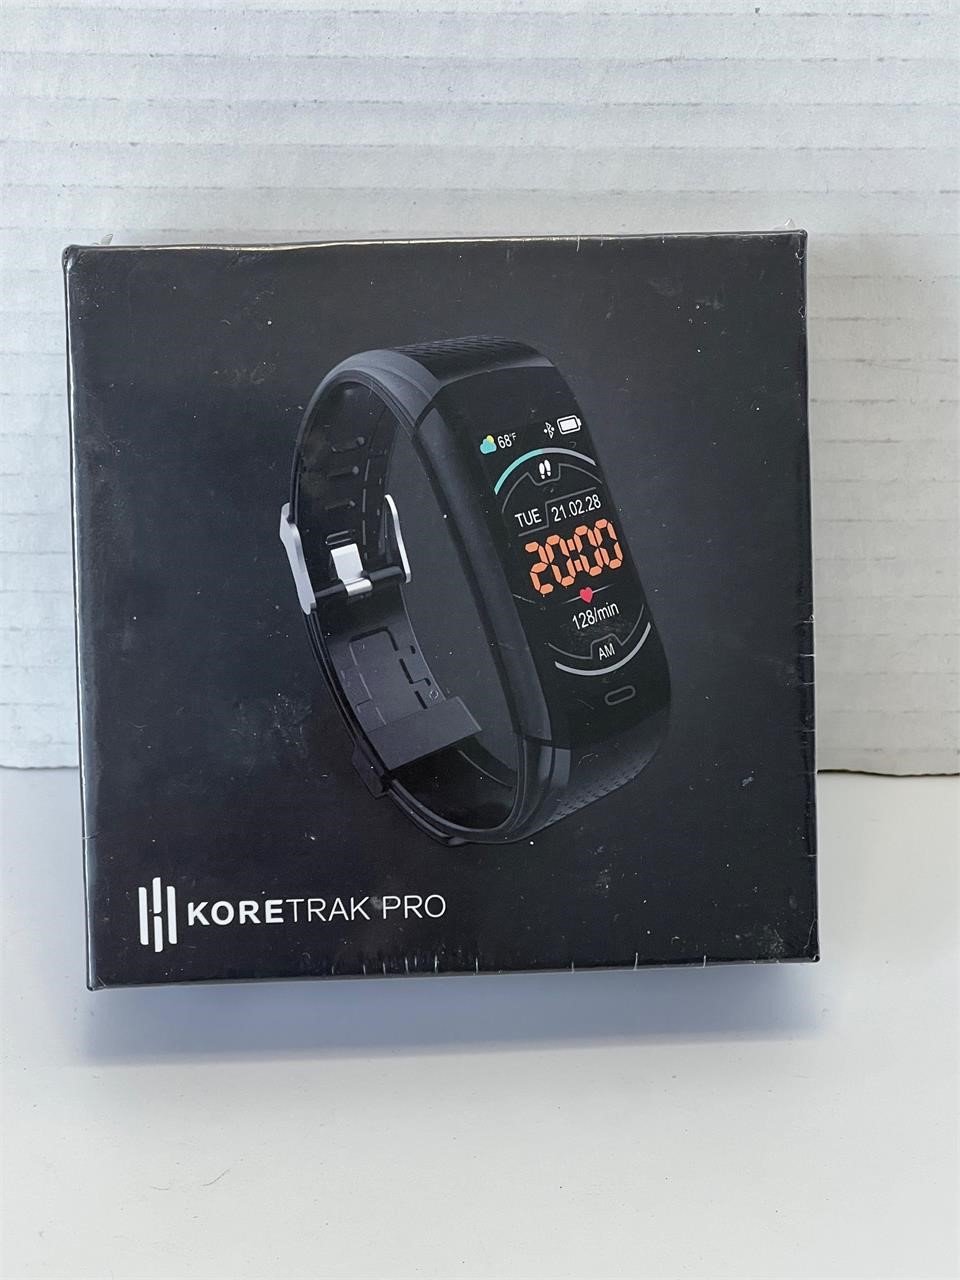 NEW, UNOPENED Koretrak Pro Smart Watch